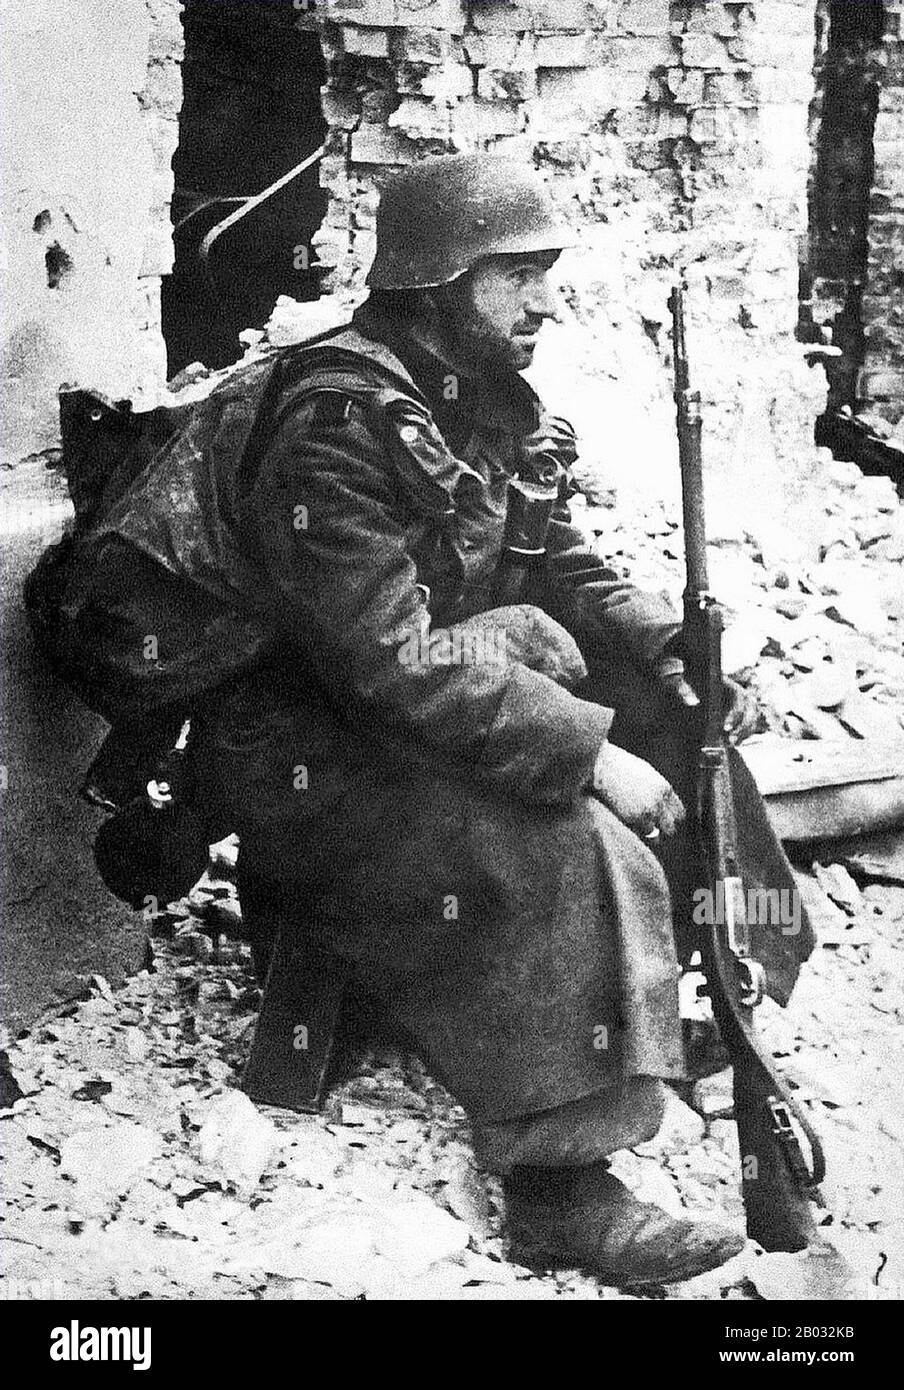 La bataille de Stalingrad (23 août 1942 – 2 février 1943) a été une grande bataille contre le front oriental de la seconde Guerre mondiale dans laquelle l'Allemagne nazie et ses alliés ont combattu l'Union soviétique pour le contrôle de la ville de Stalingrad (aujourd'hui Volgograd) dans le sud de la Russie, Près de la frontière orientale de l'Europe. Marquée par des combats de quartiers étroits et des agressions directes sur des civils par des raids aériens, elle est souvent considérée comme l'une des plus importantes (près de 2,2 millions de personnes) et des batailles les plus sanglantes (1,7 à 2 millions de blessés, tués ou capturés) de l'histoire de la guerre. Les lourdes pertes infligées à la Wehrmach allemande Banque D'Images